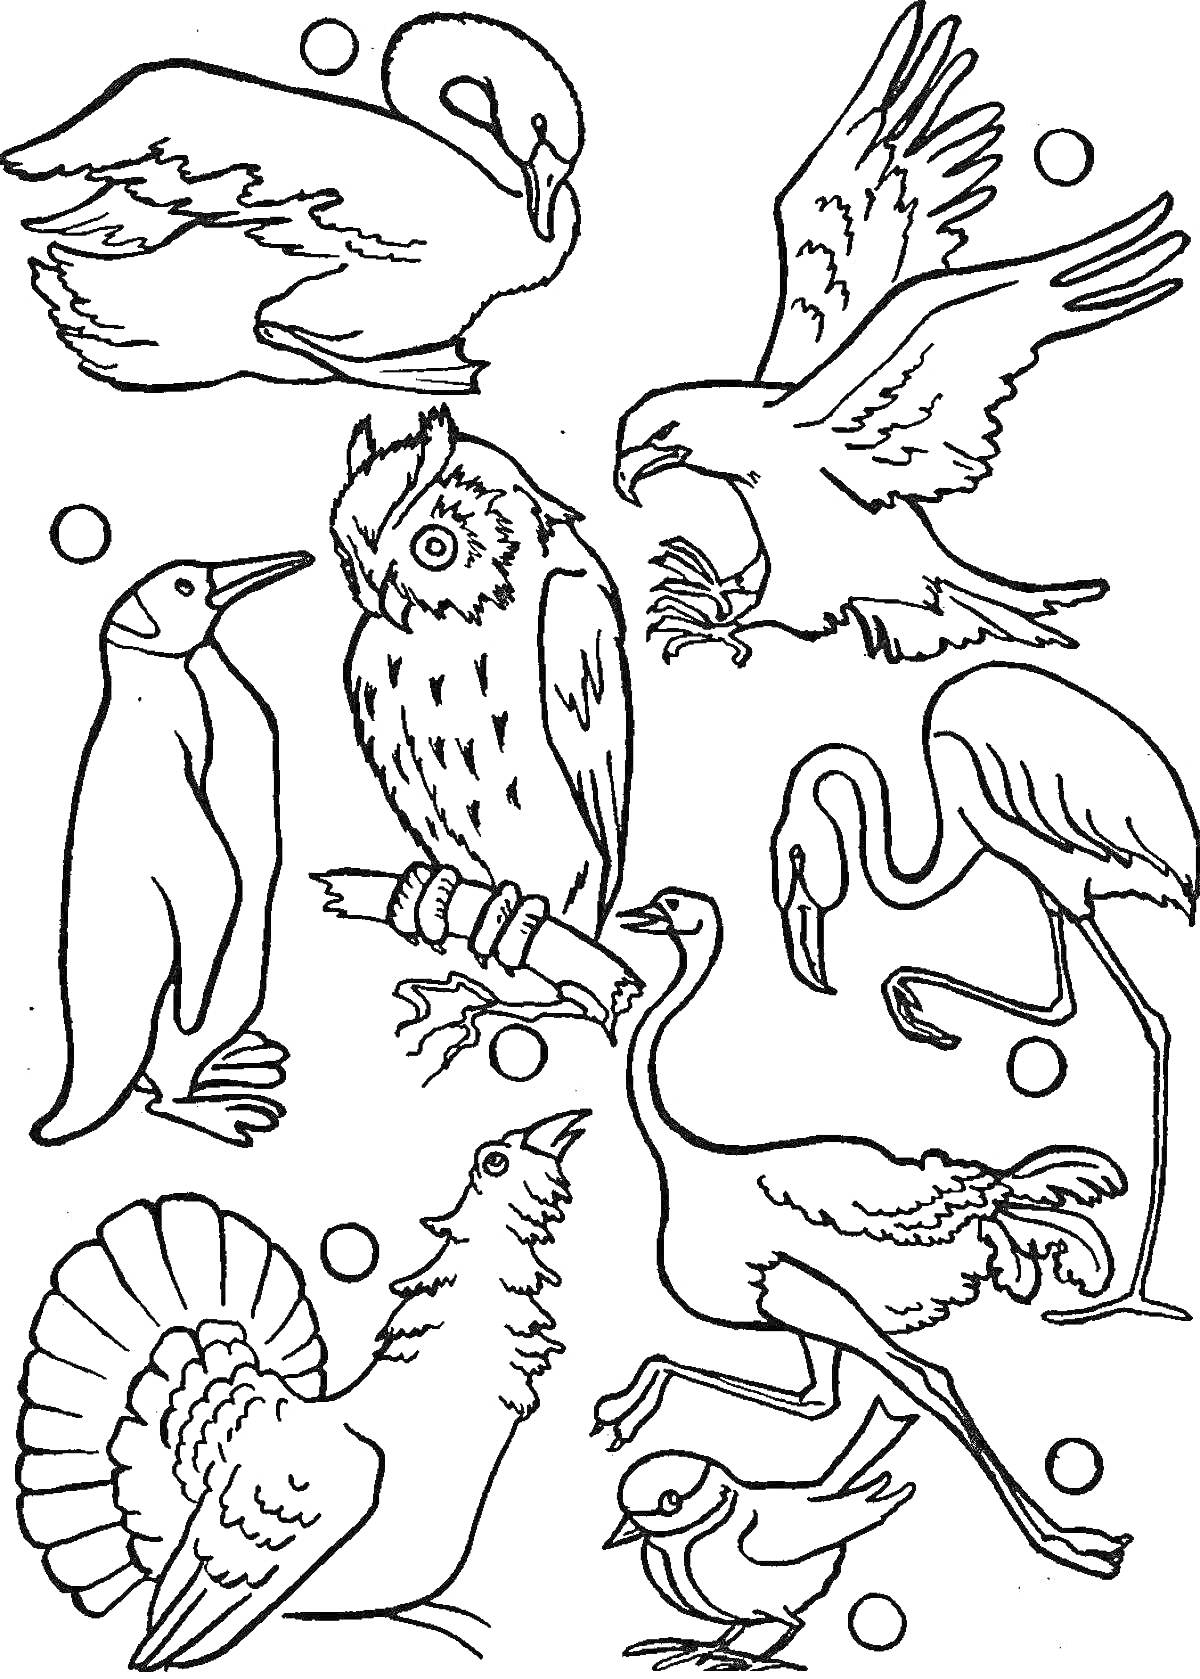 Раскраска Раскраска с животными: лебедь, орёл, пингвин, сова, фламинго, индейка, журавль, курица, воробей, круги